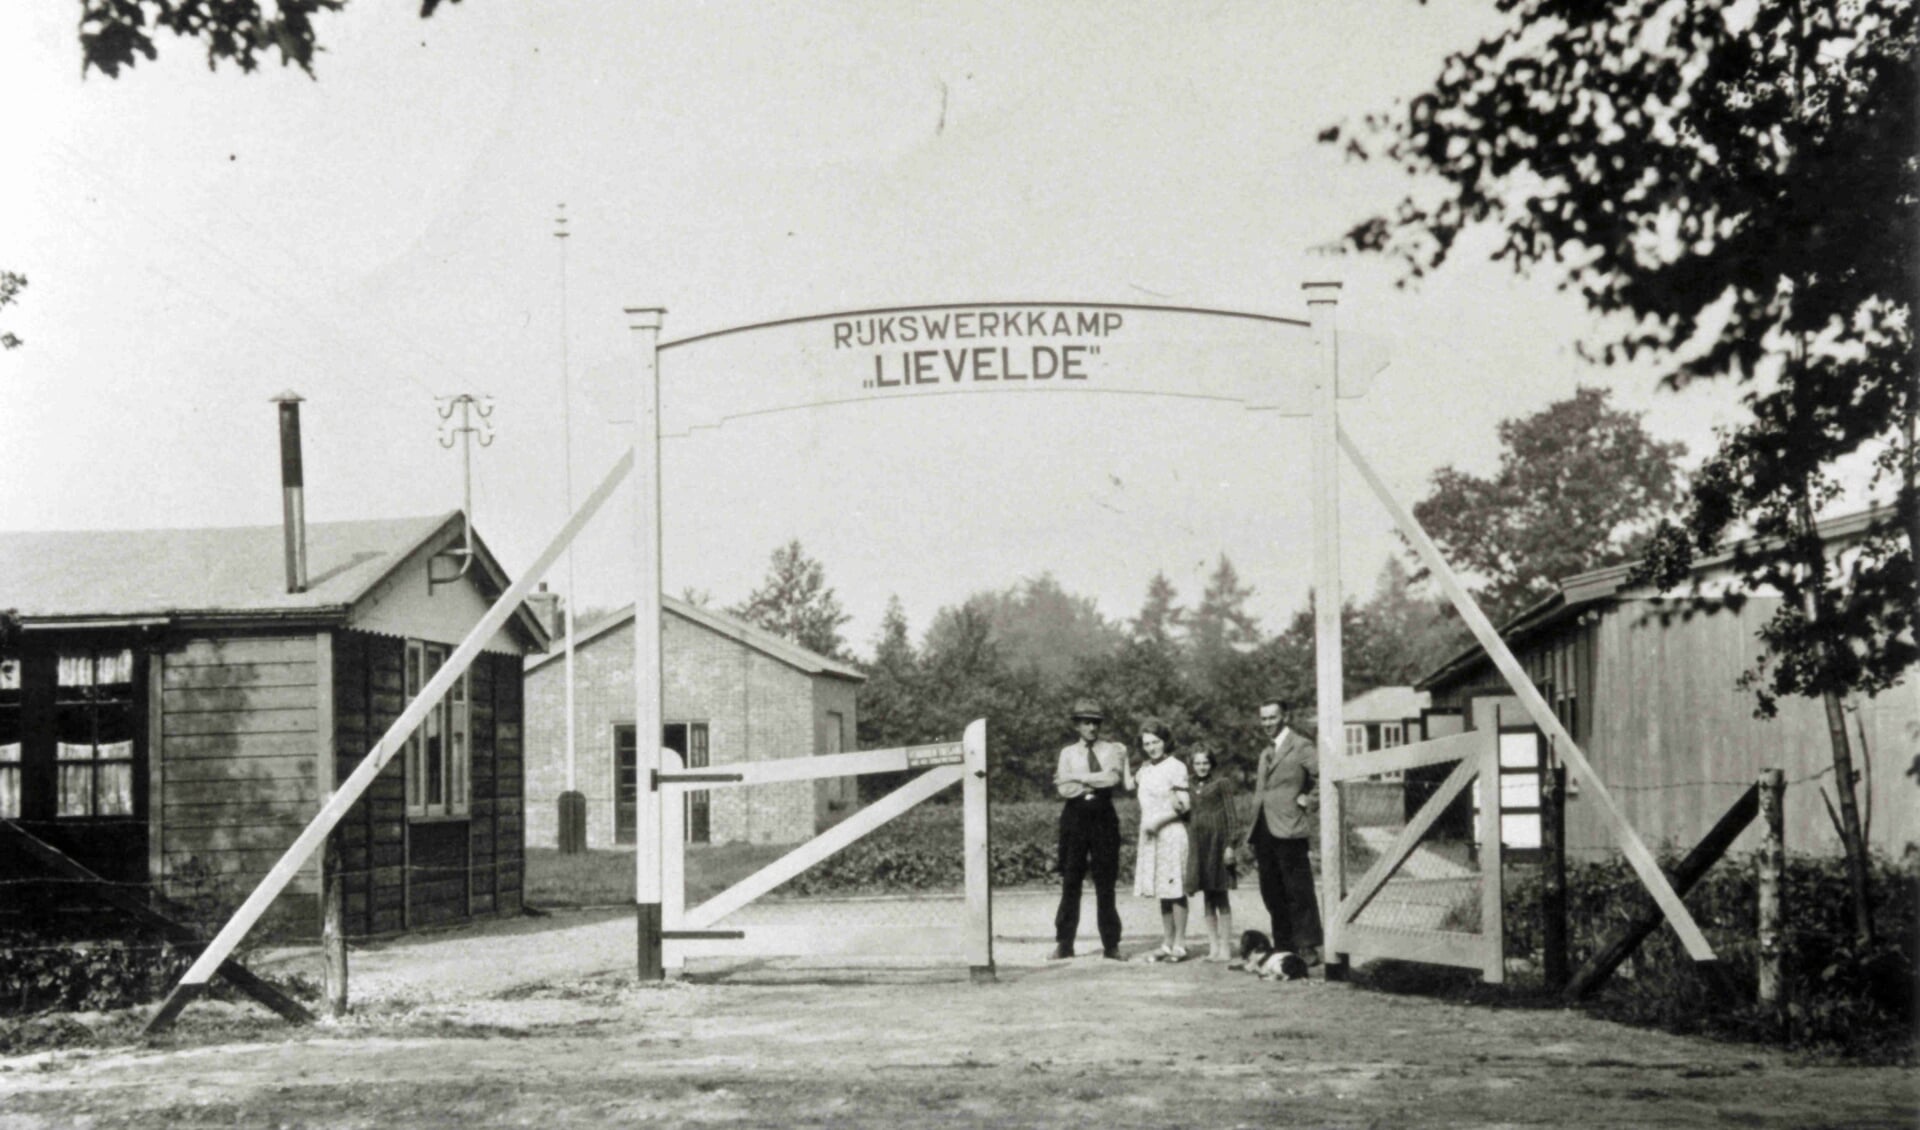 Rijkswerkkamp Lievelde aan de Schansdijk. Foto: Oudheidkundige Vereniging Lichtenvoorde